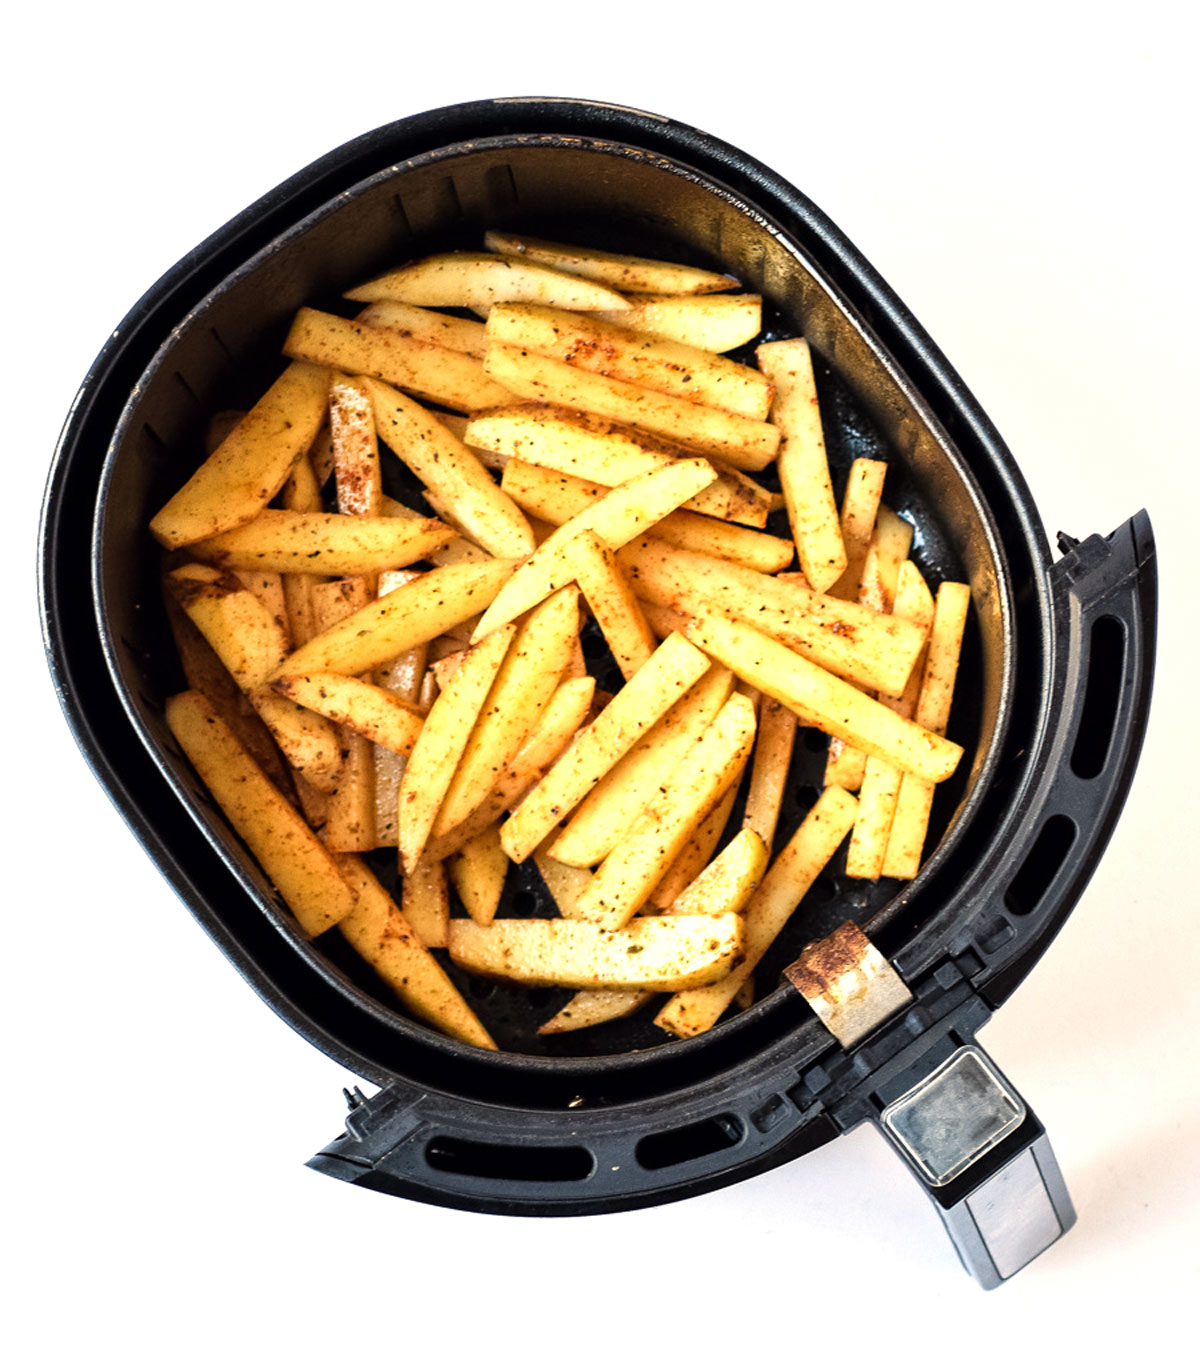 cajun fries in air fryer basket